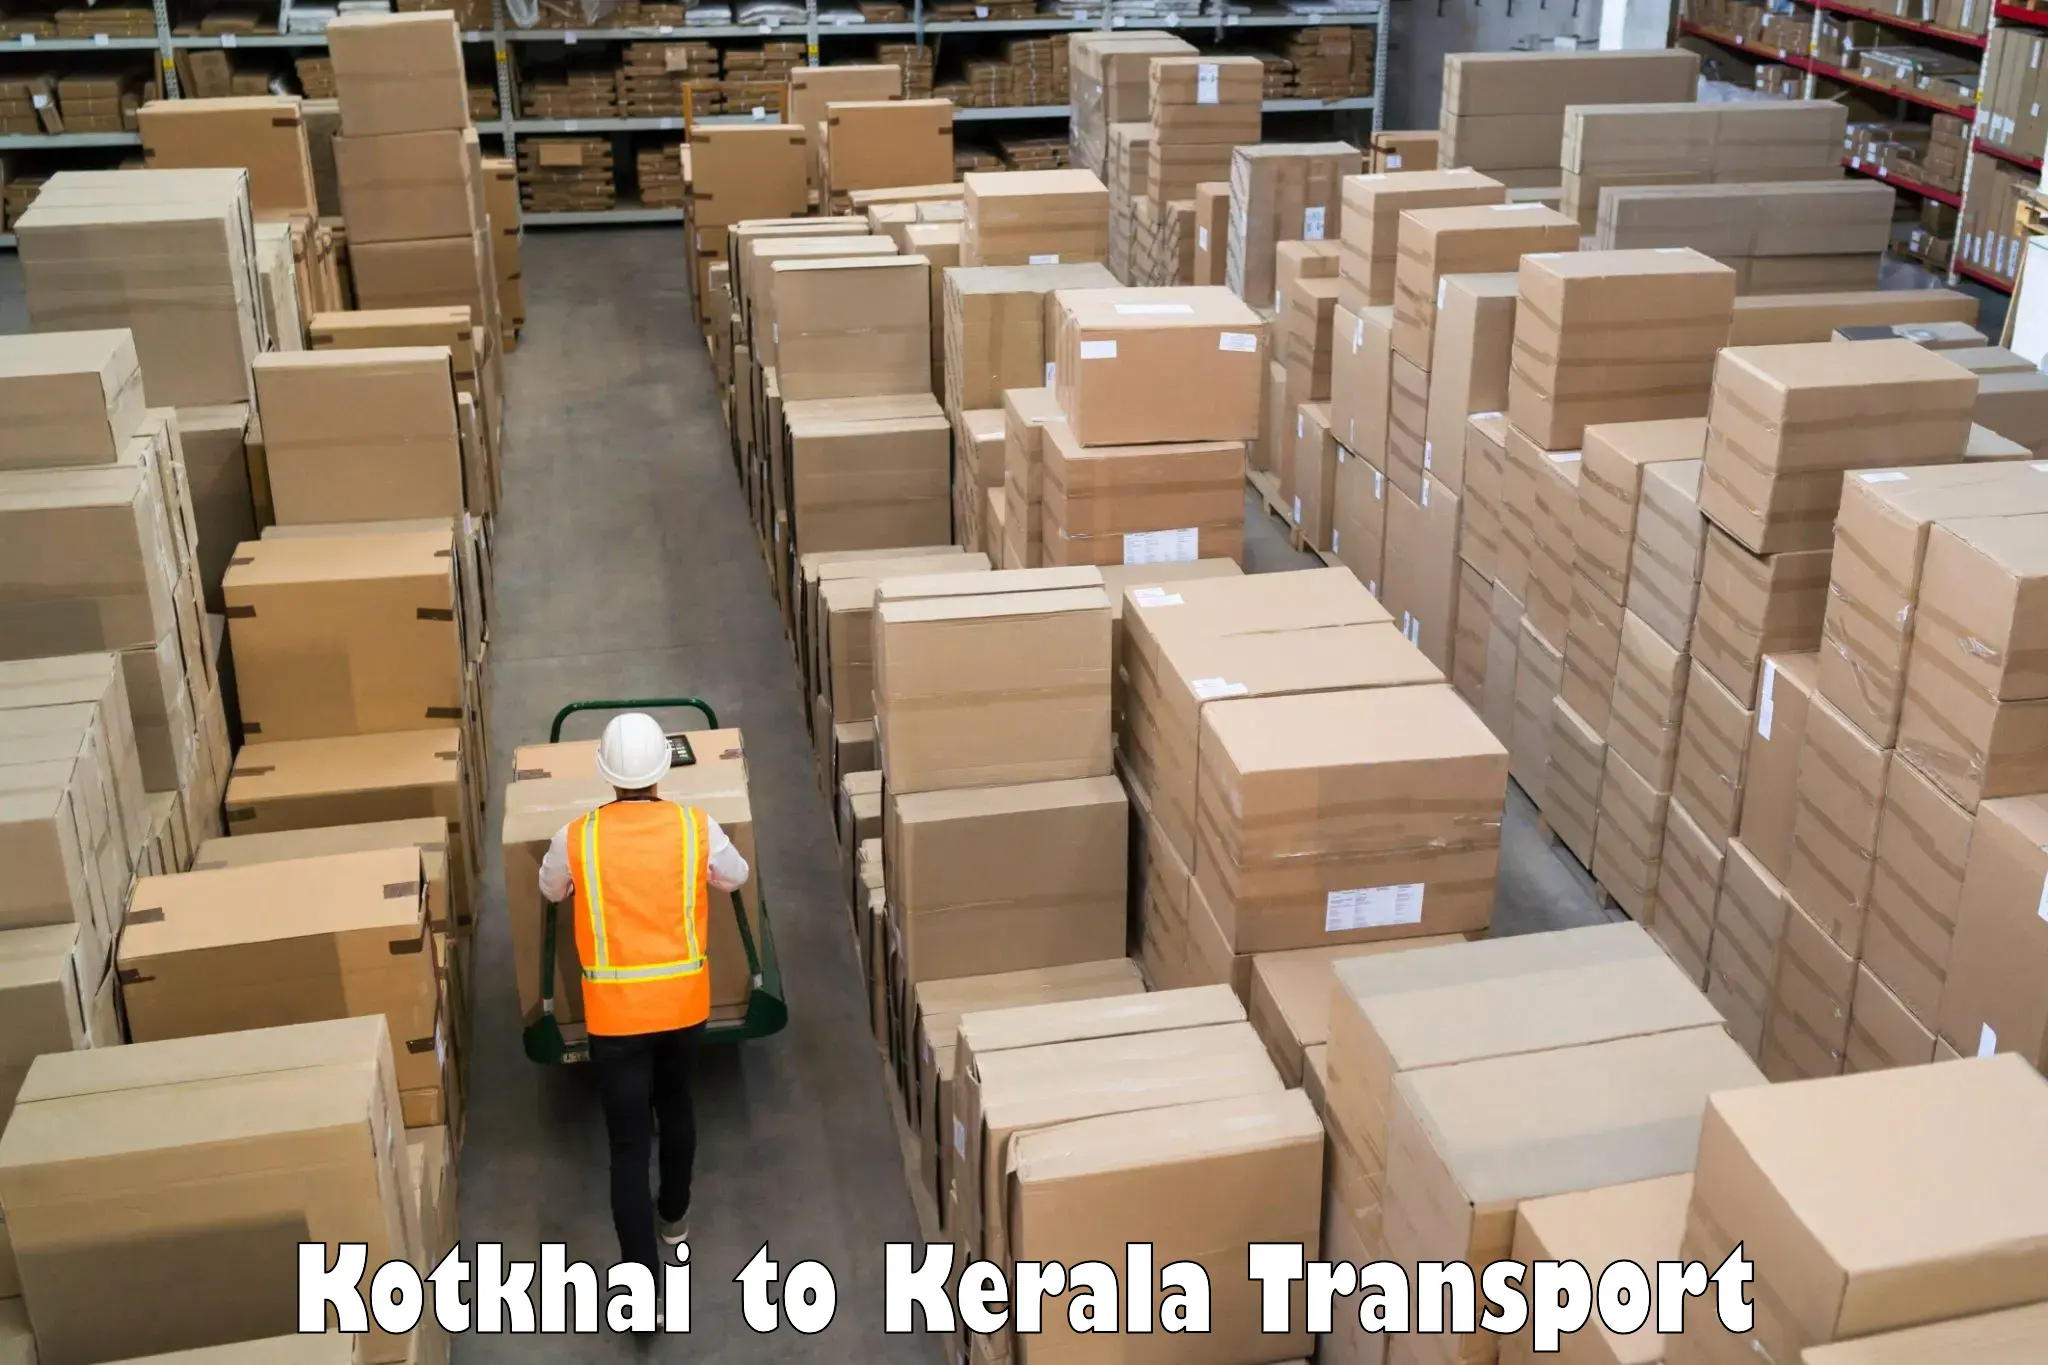 Parcel transport services in Kotkhai to Muvattupuzha